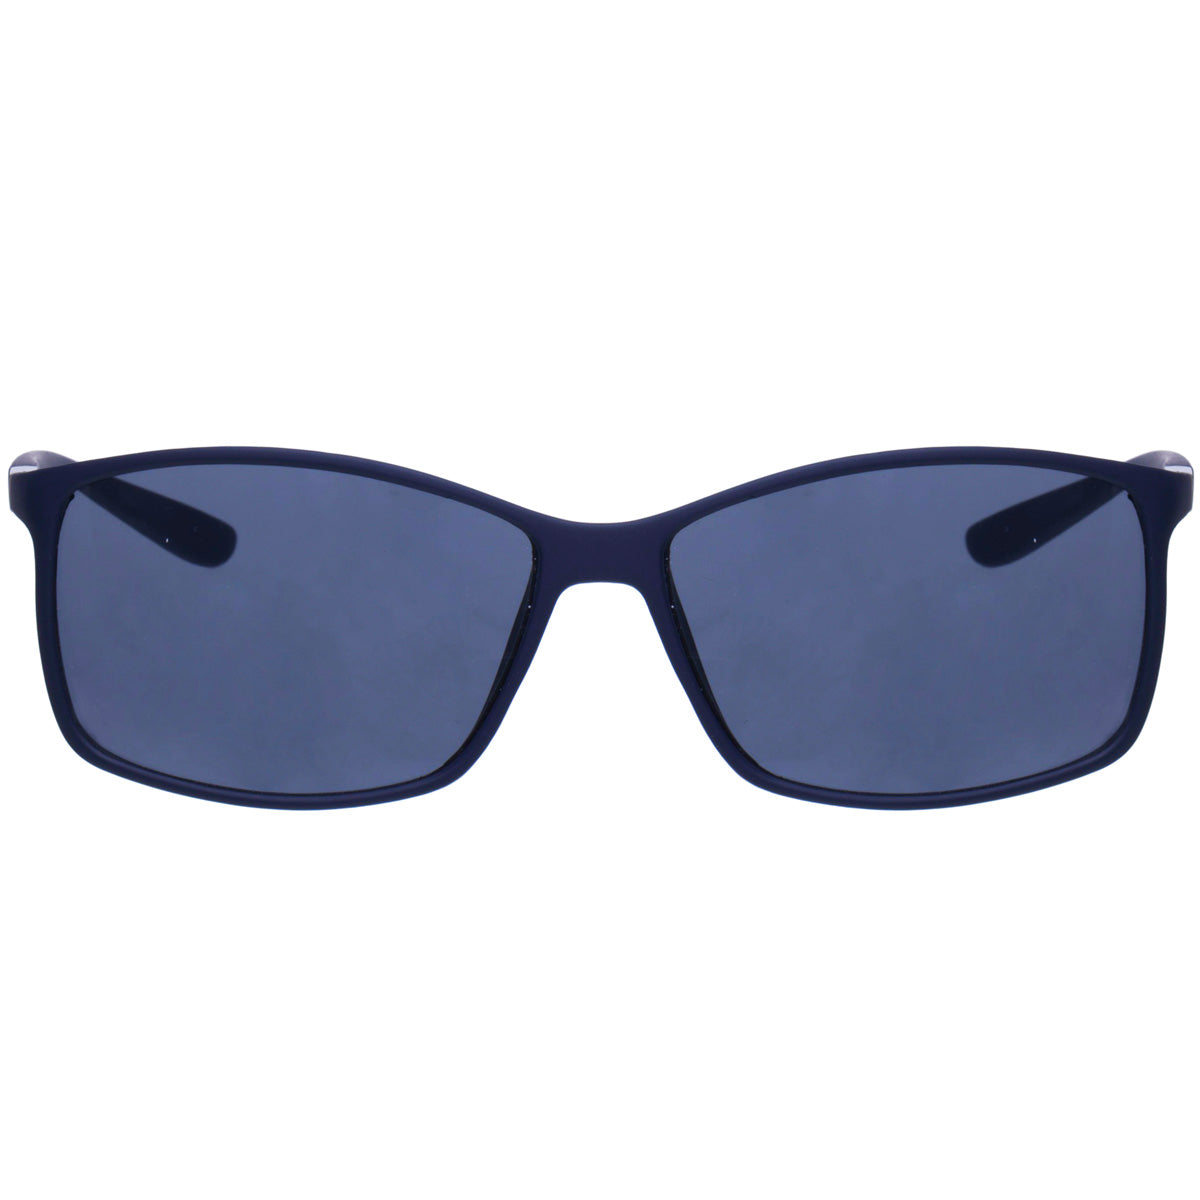 Ultra-light men's sunglasses